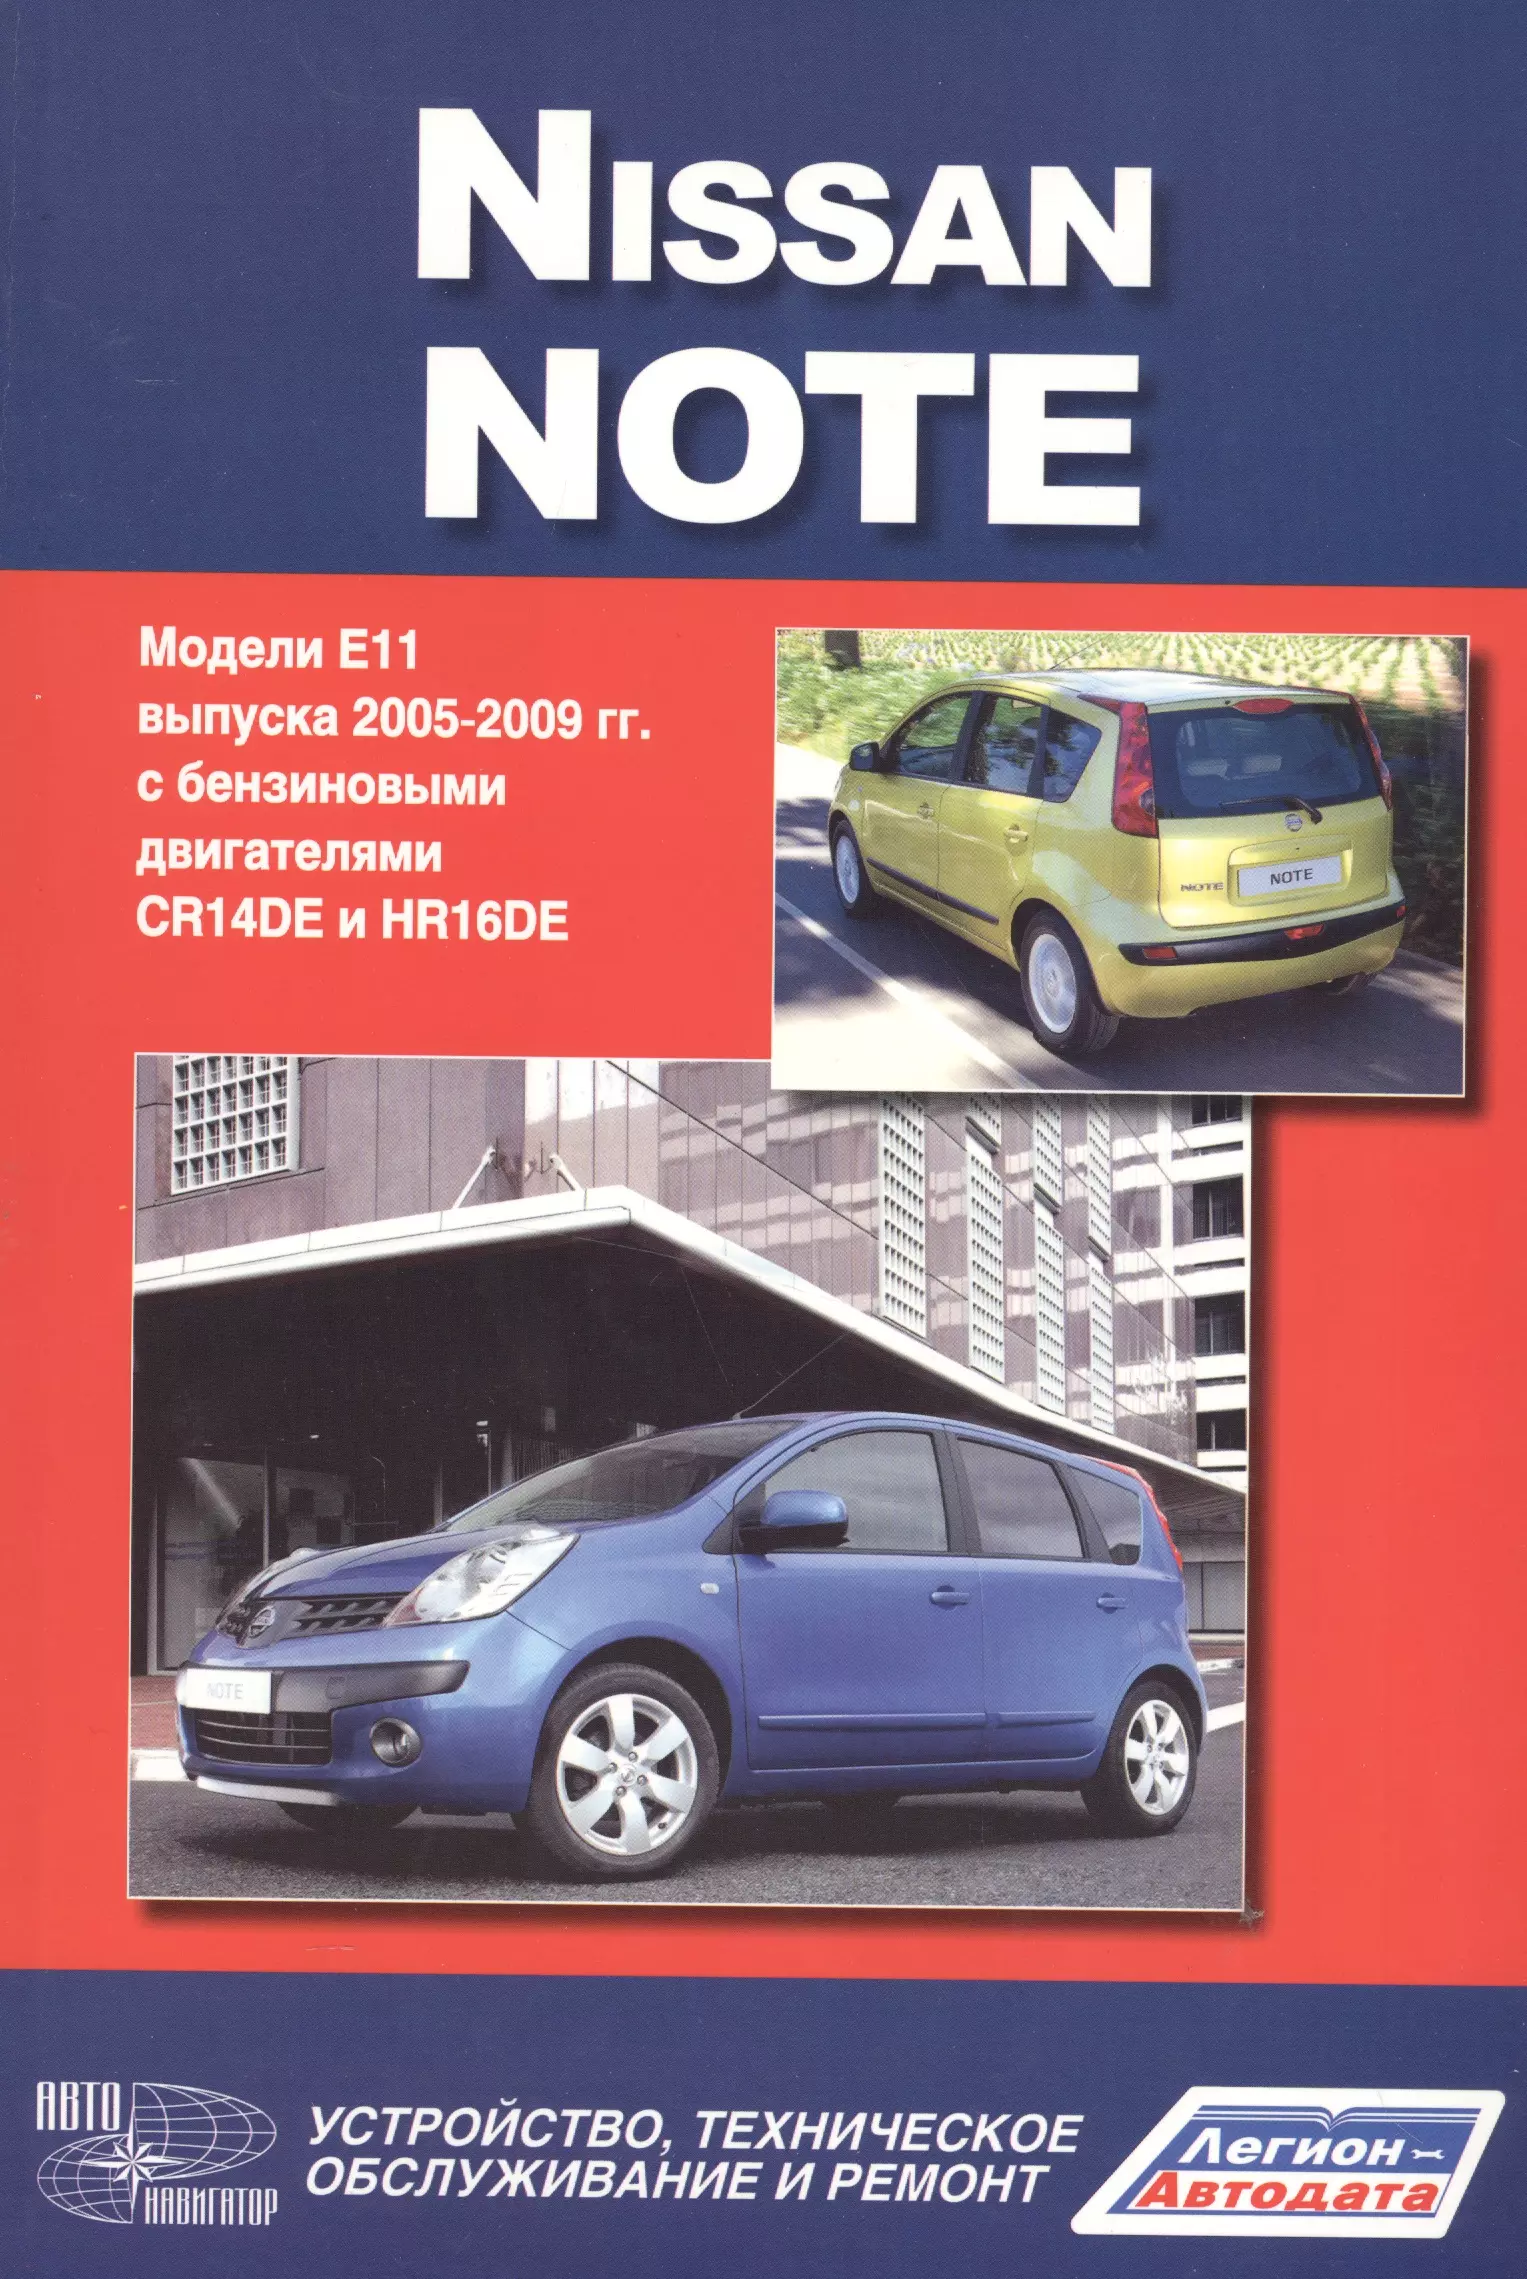 Nissan Note.Модели Е 1 1 выпуска c 2005 г. с бенз. двигателями CR14DE и HR 16DE.Руководство по эксплуатации, устройство, тех. обслуживание, ремонт